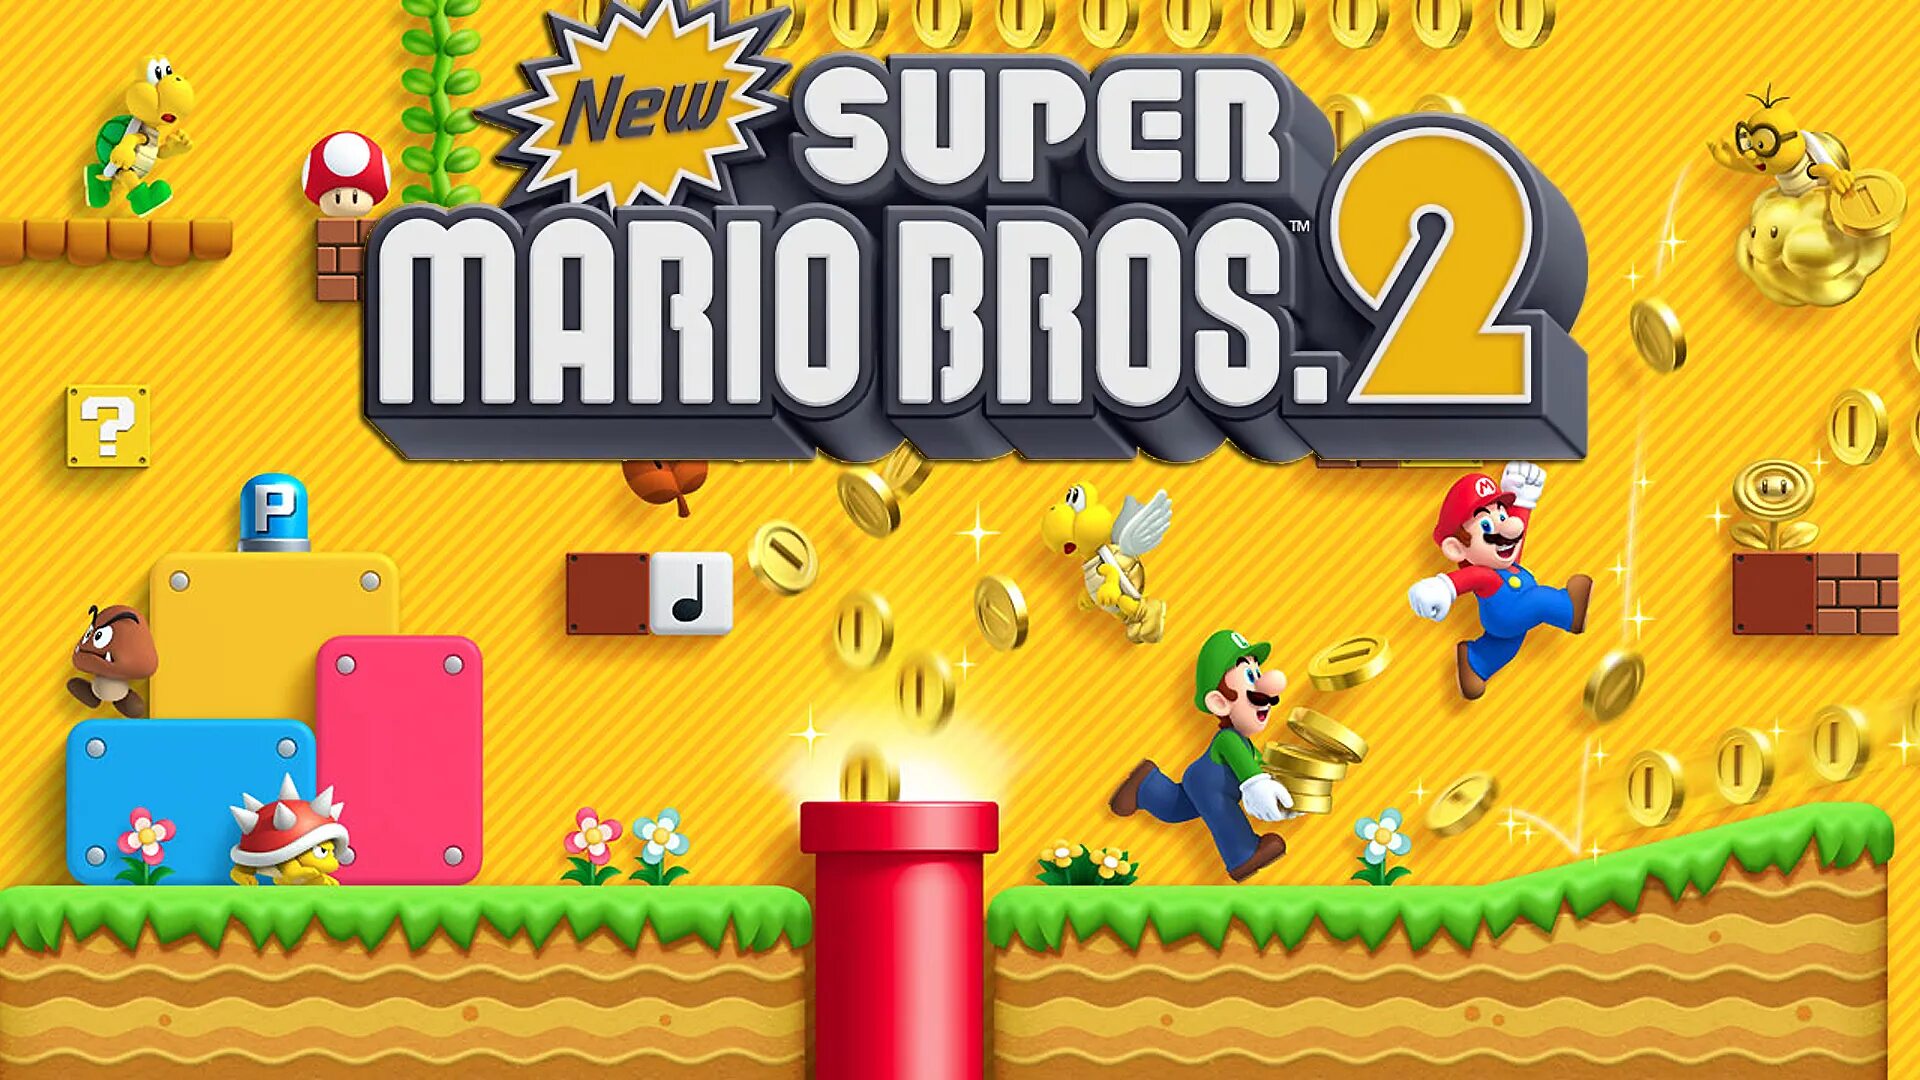 Download super mario bros. New super Mario Bros 2 Nintendo 3ds. New super Mario Bros. Нинтендо ДС. New super Mario Bros 2 Wii. New super Mario Bros Nintendo DS.